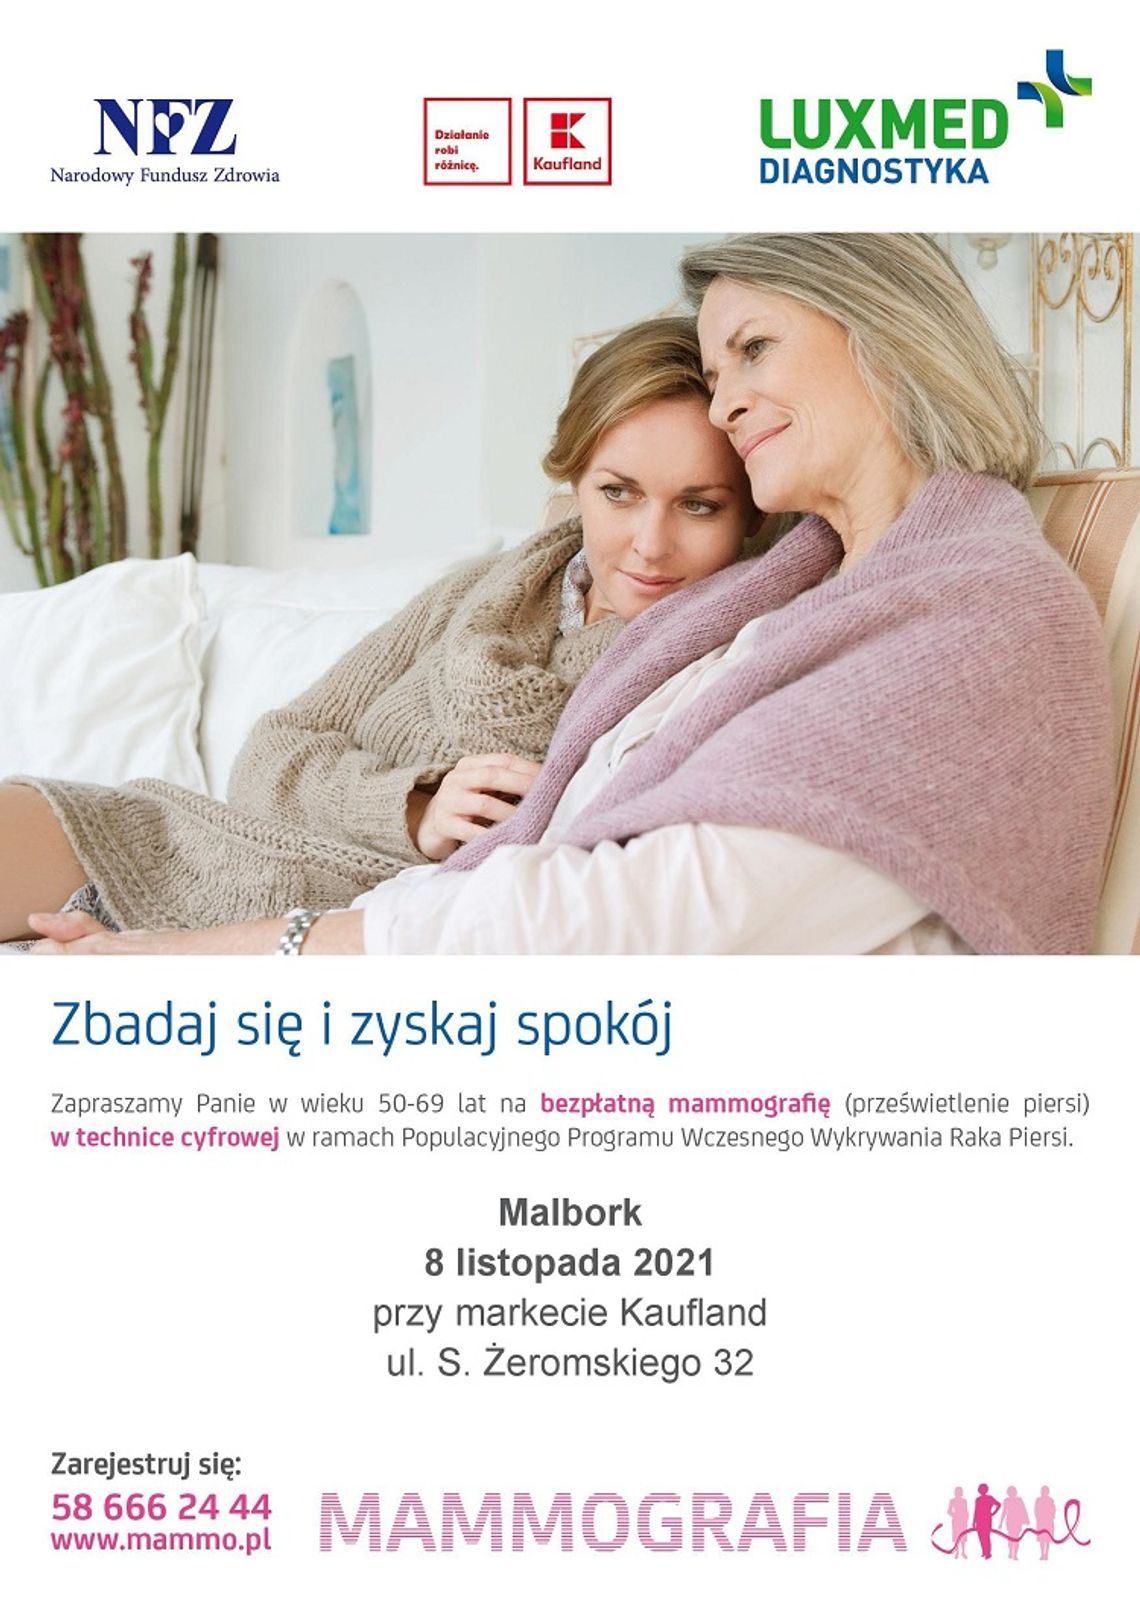 Bezpłatne badanie mammograficzne dla Pań w Malborku.